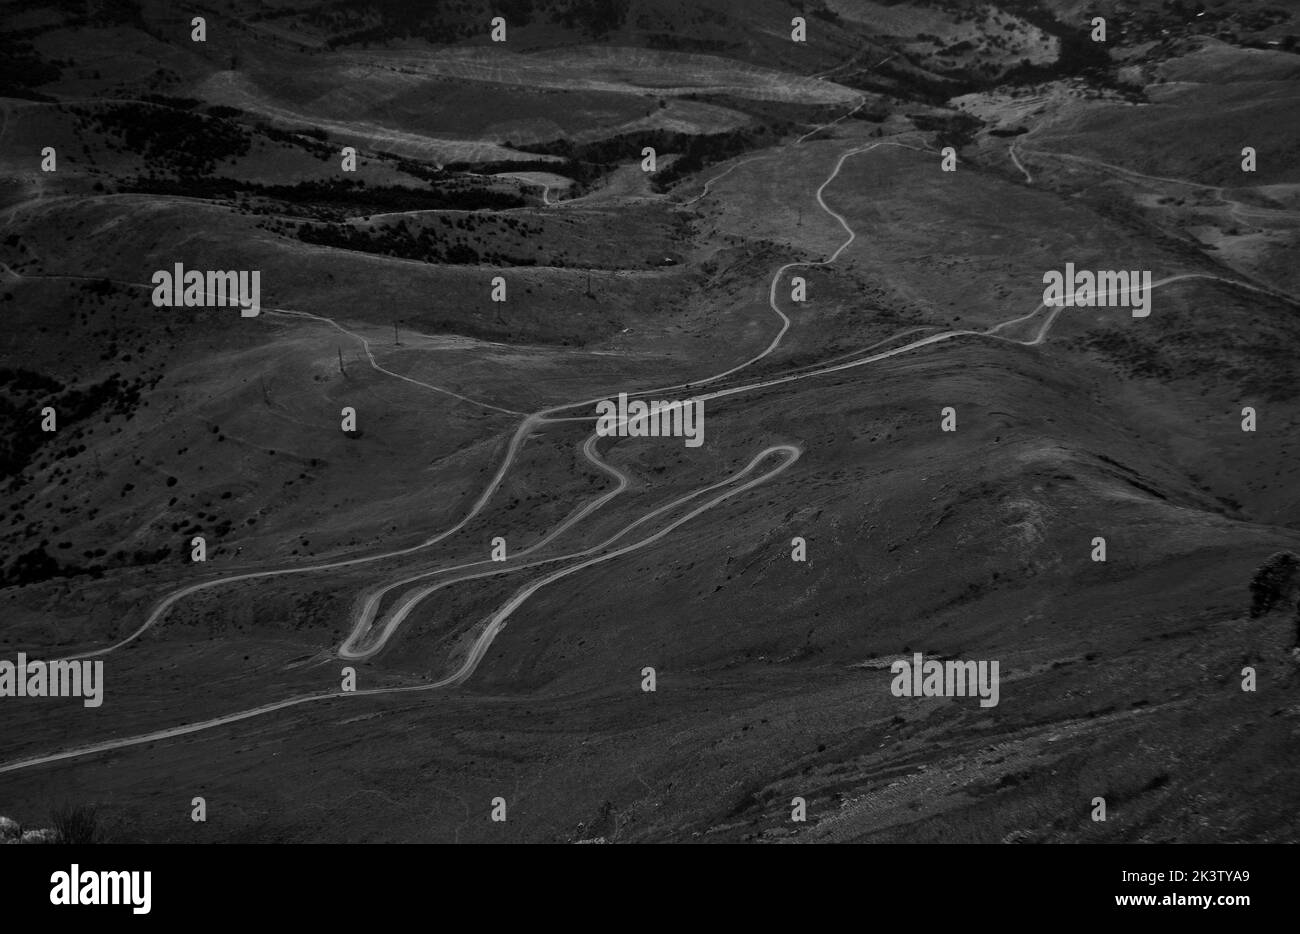 Una fotografía aérea en escala de grises de calles curvas en el paisaje montañoso Foto de stock